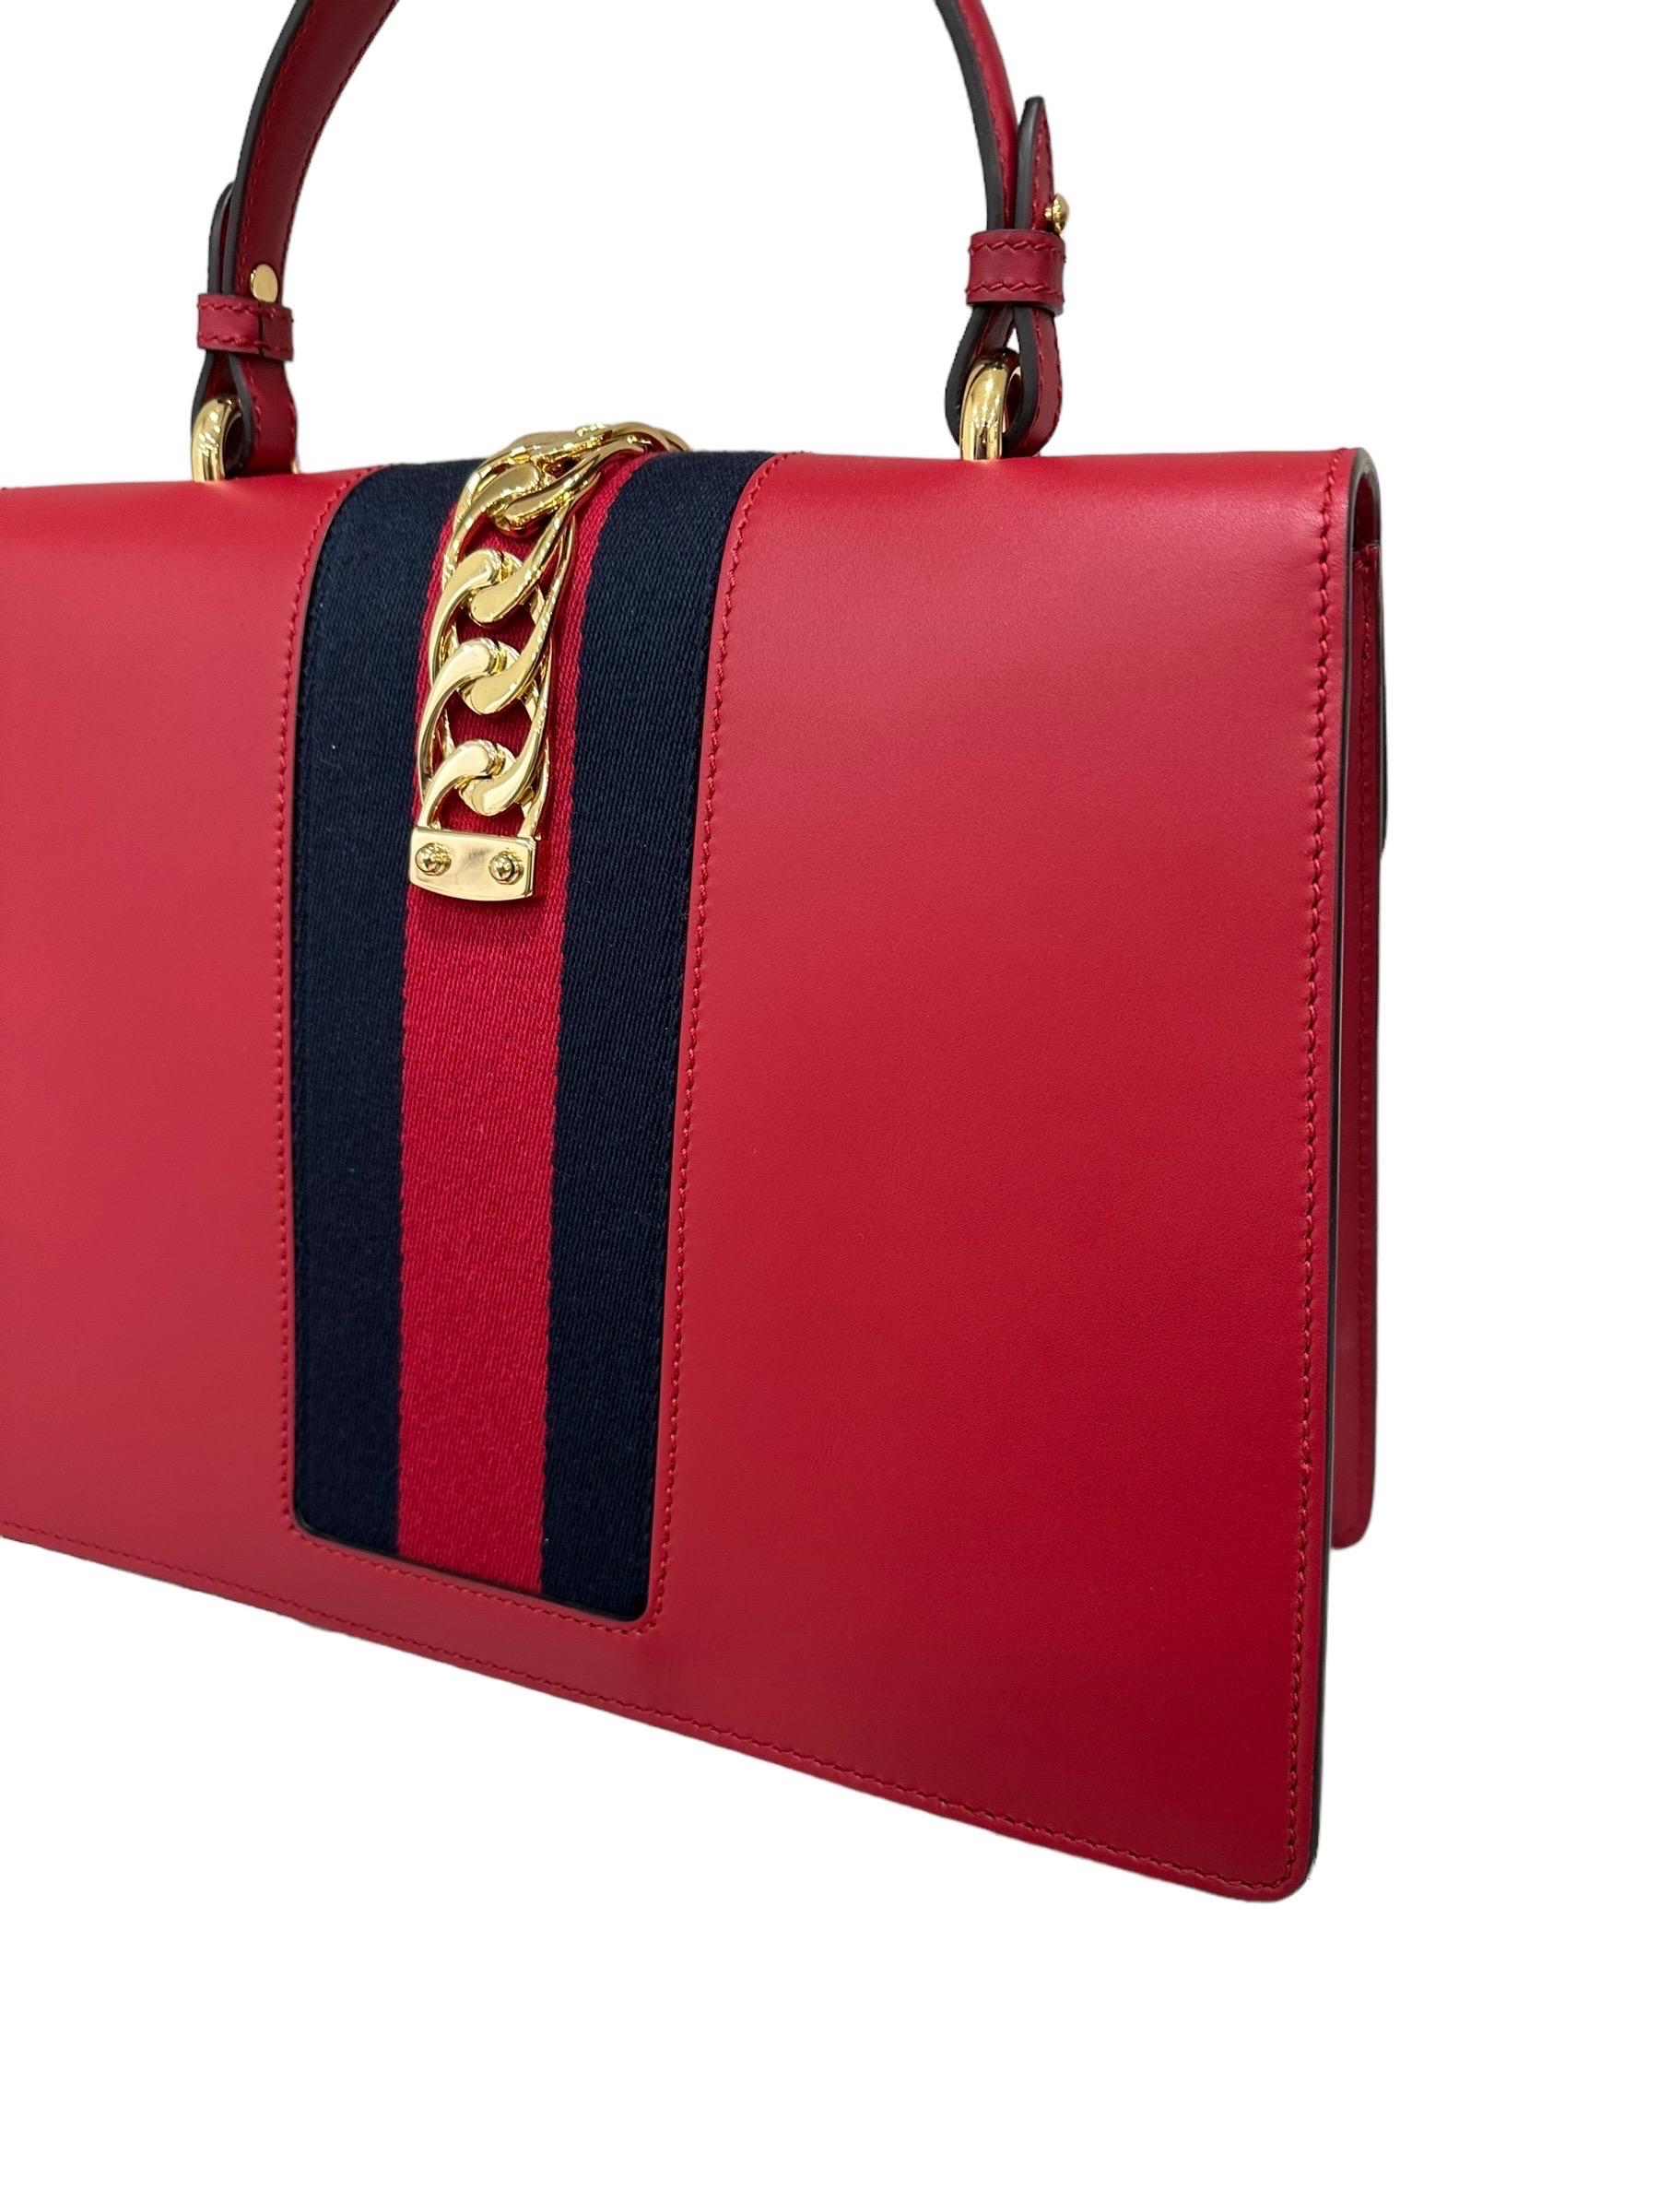 Gucci Sylvie Media Borsa a Tracolla pelle Rossa  For Sale 14